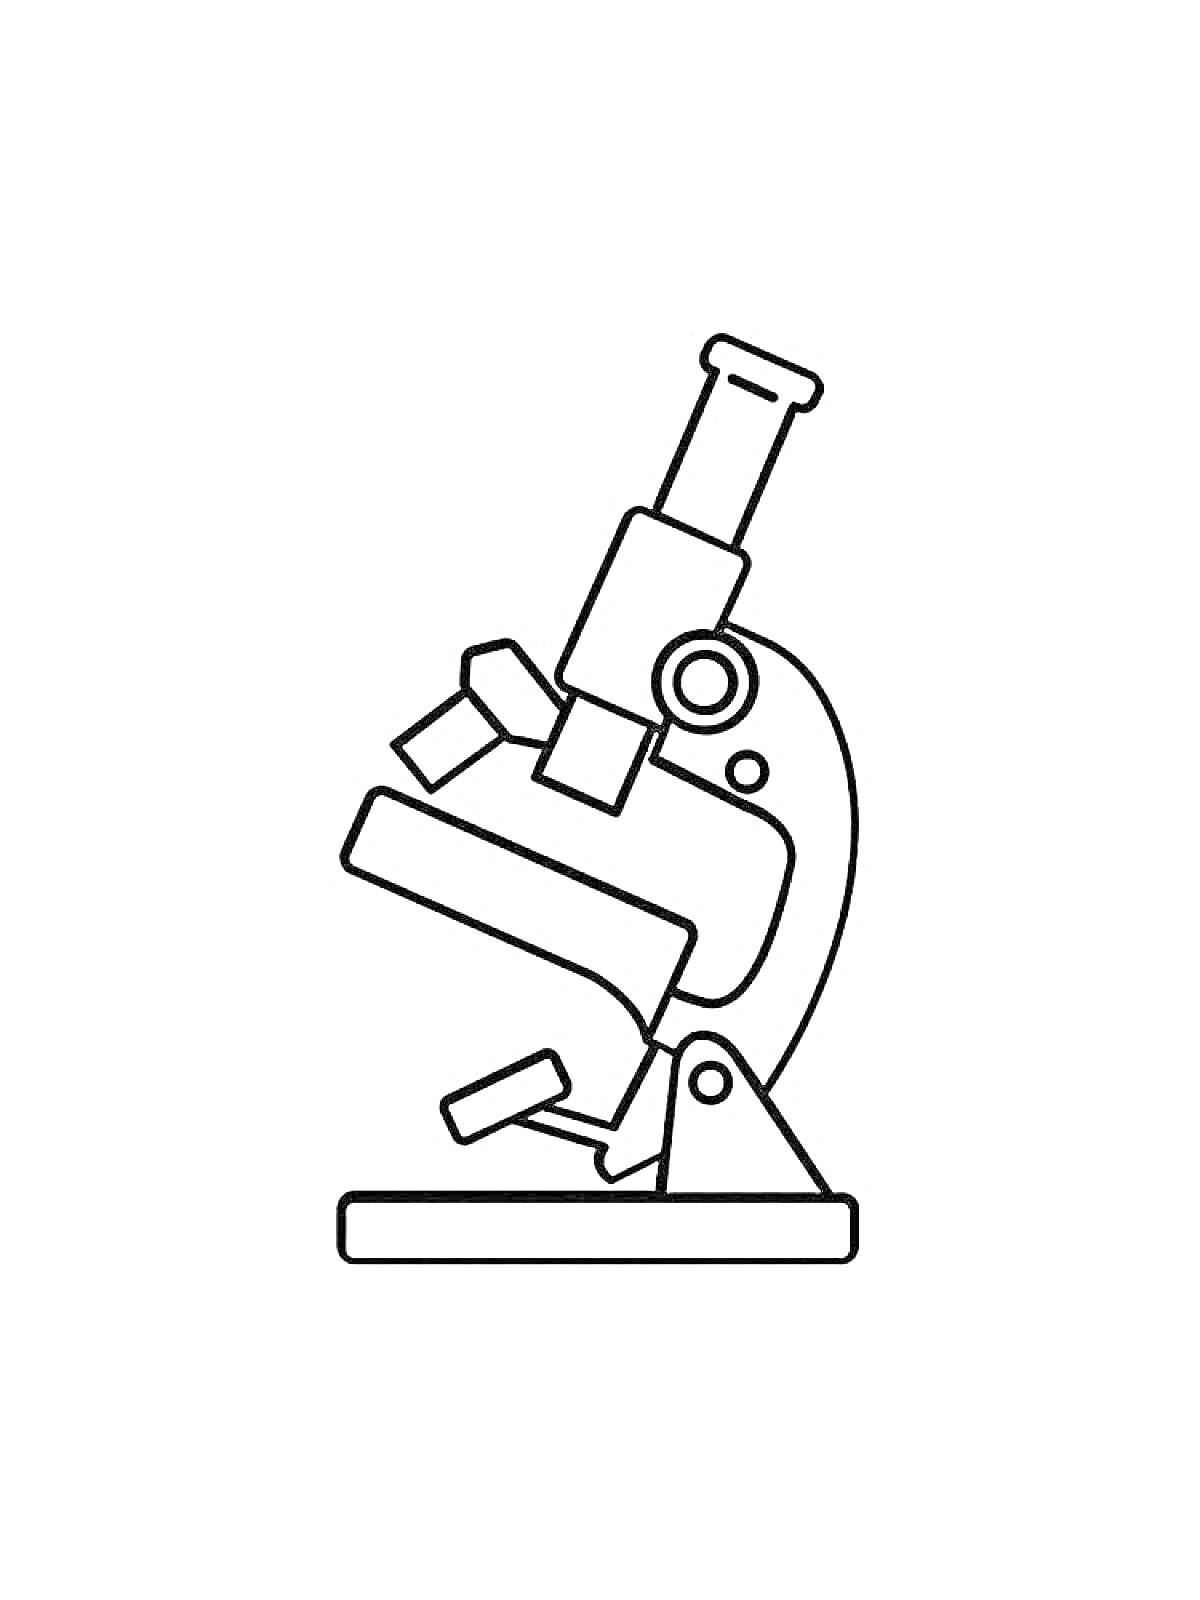 Раскраска Микроскоп с окуляром, объективами, тубусом, предметным столиком, фокусировочным винтом и основанием